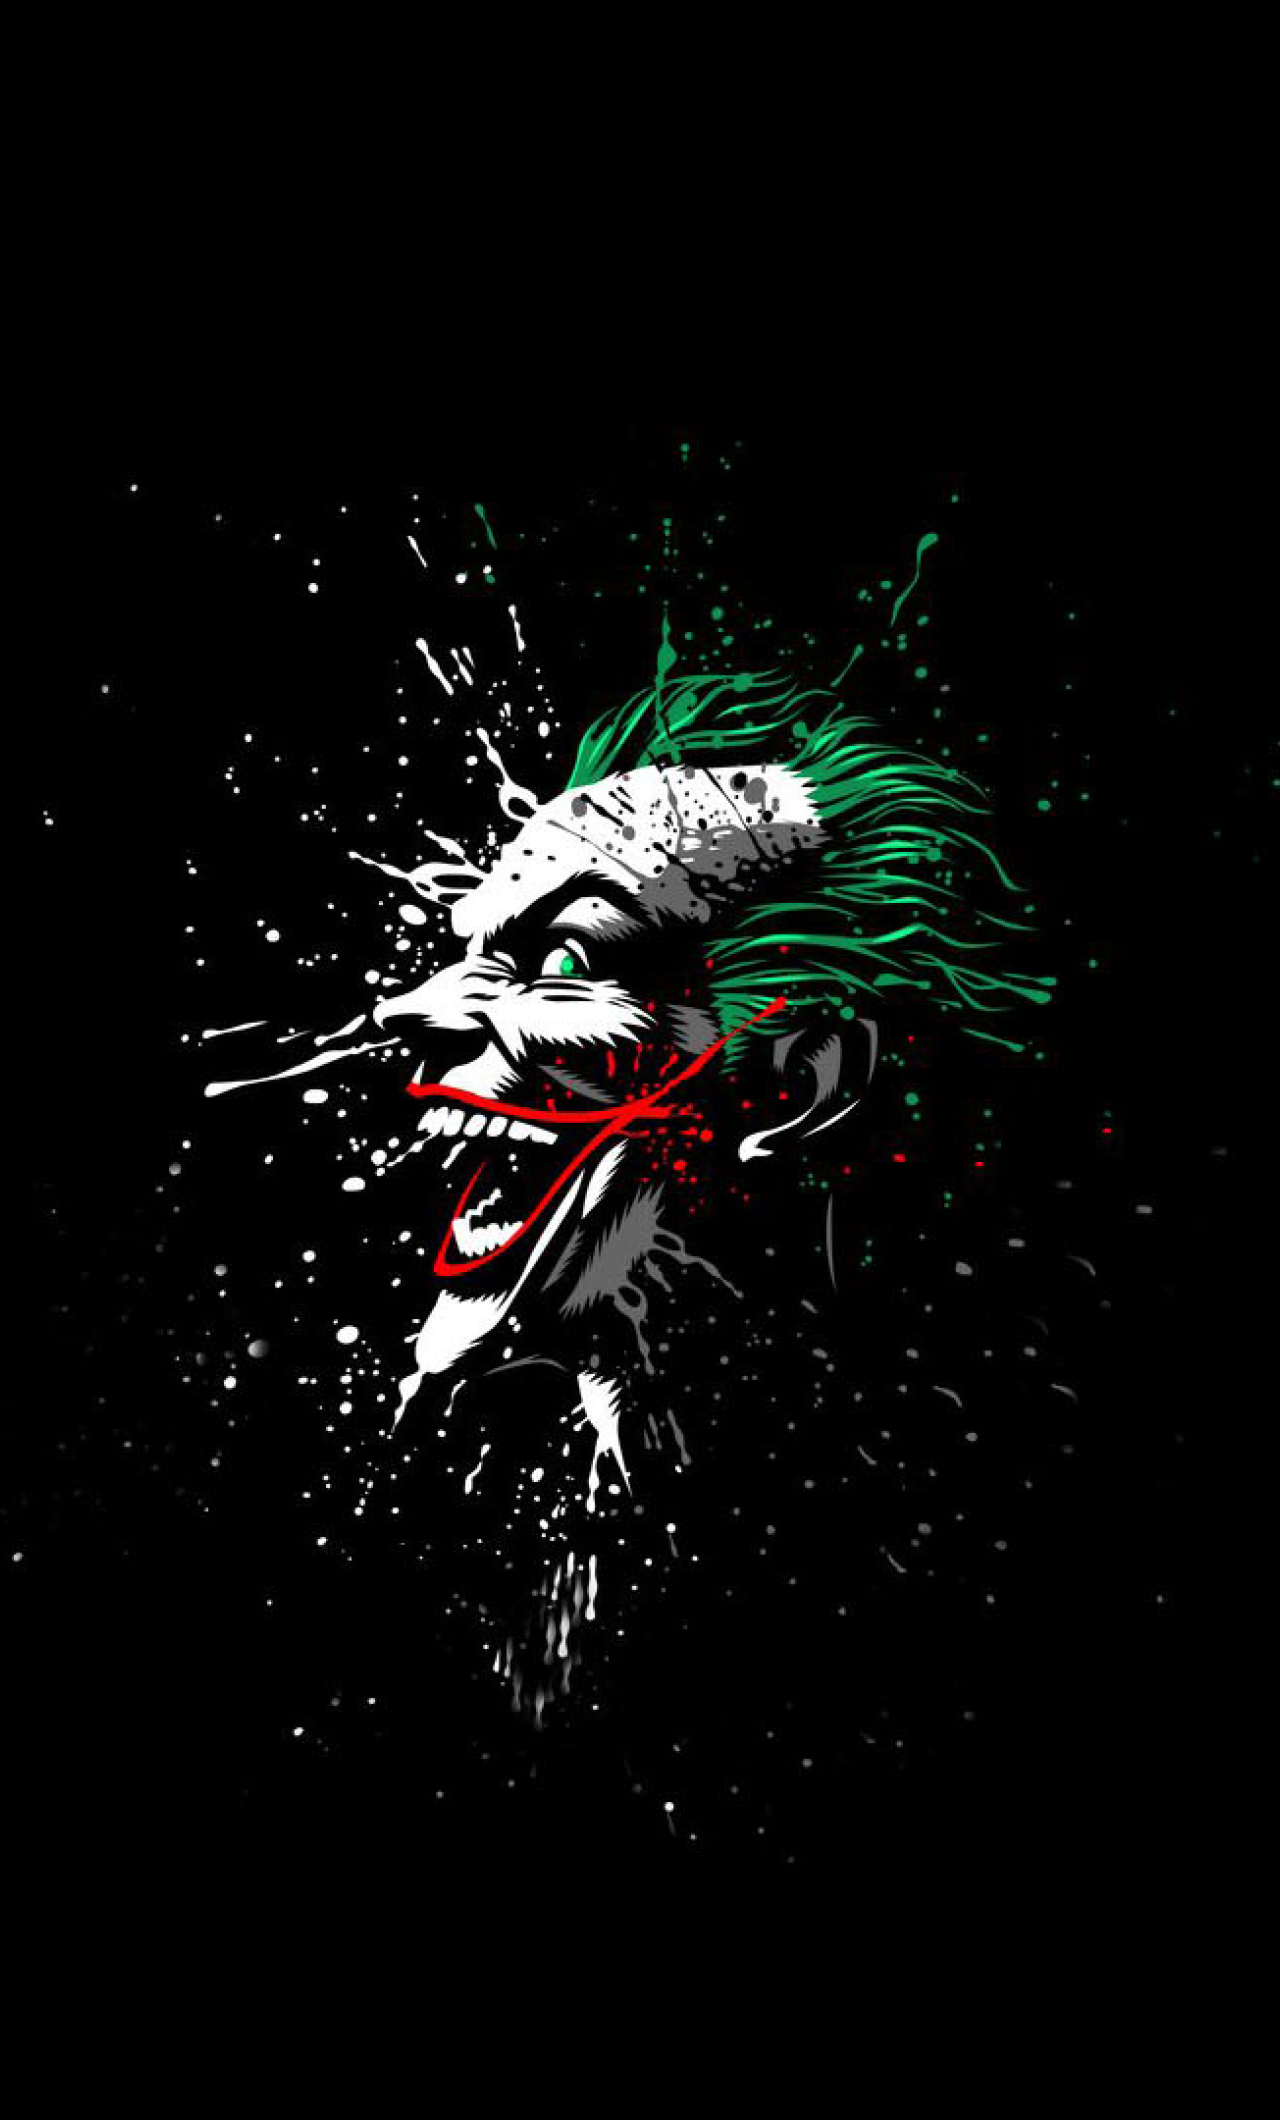  Joker  Artwork Full HD Wallpaper 